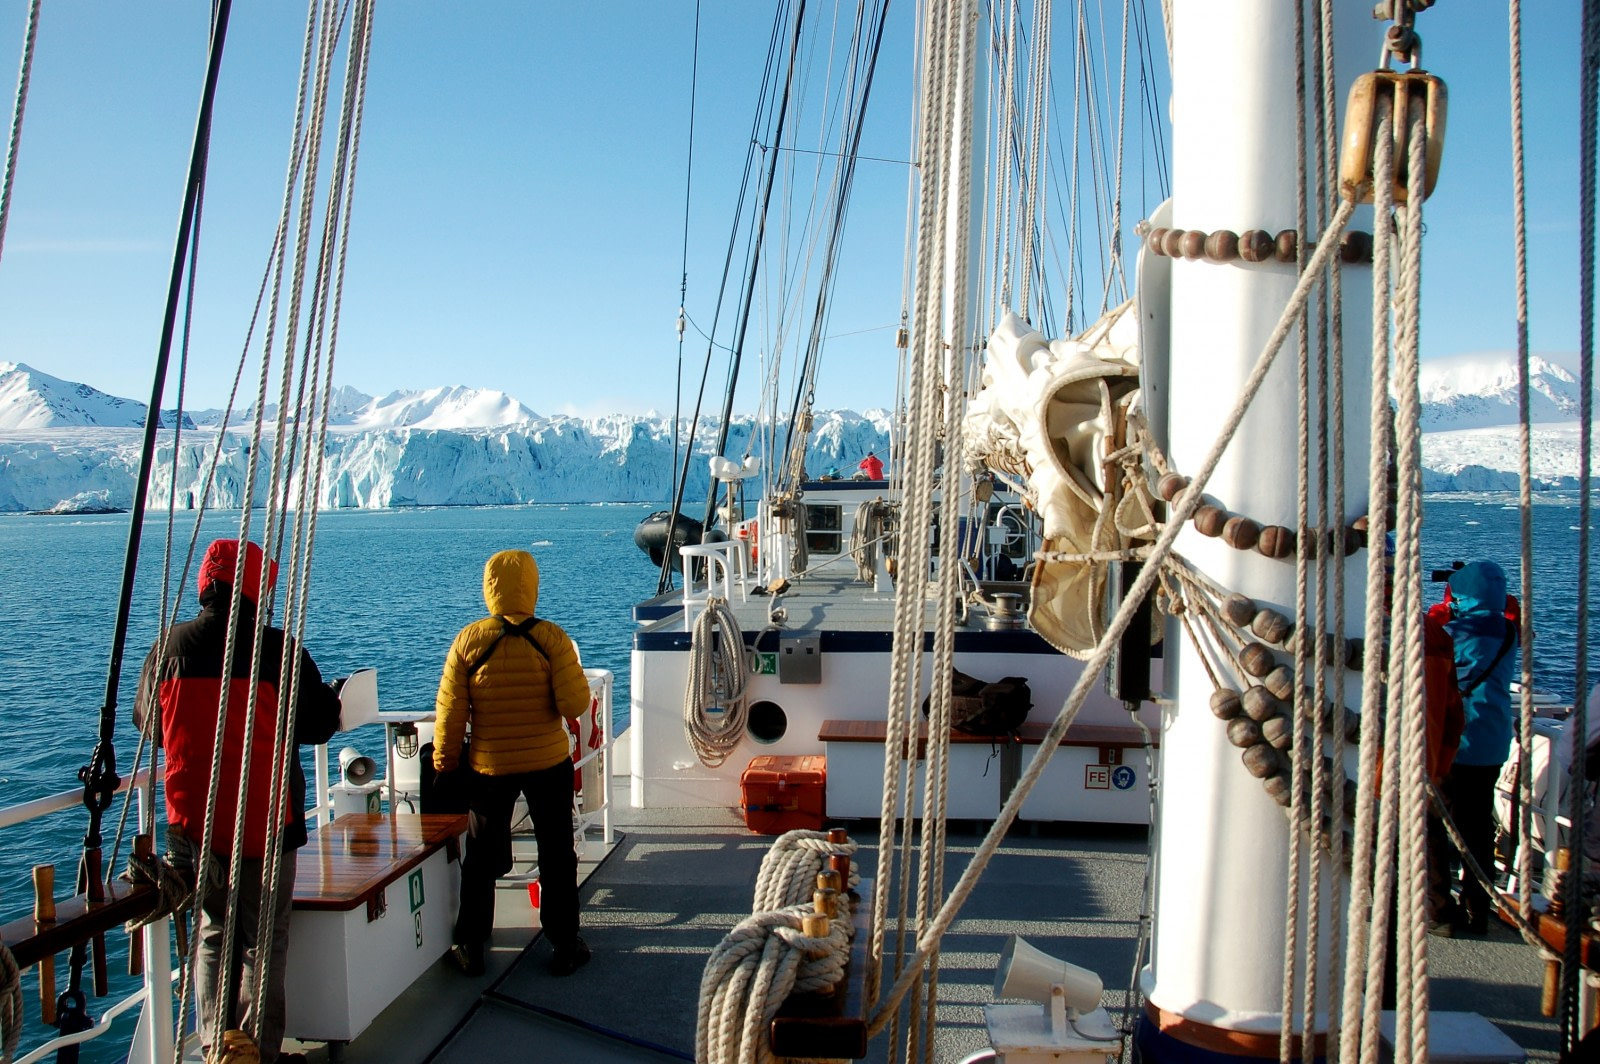 Sailing, Rembrandt van Rijn, Spitsbergen, Arctic Spring © Philipp Schaudy - Oceanwide Expeditions.jpg